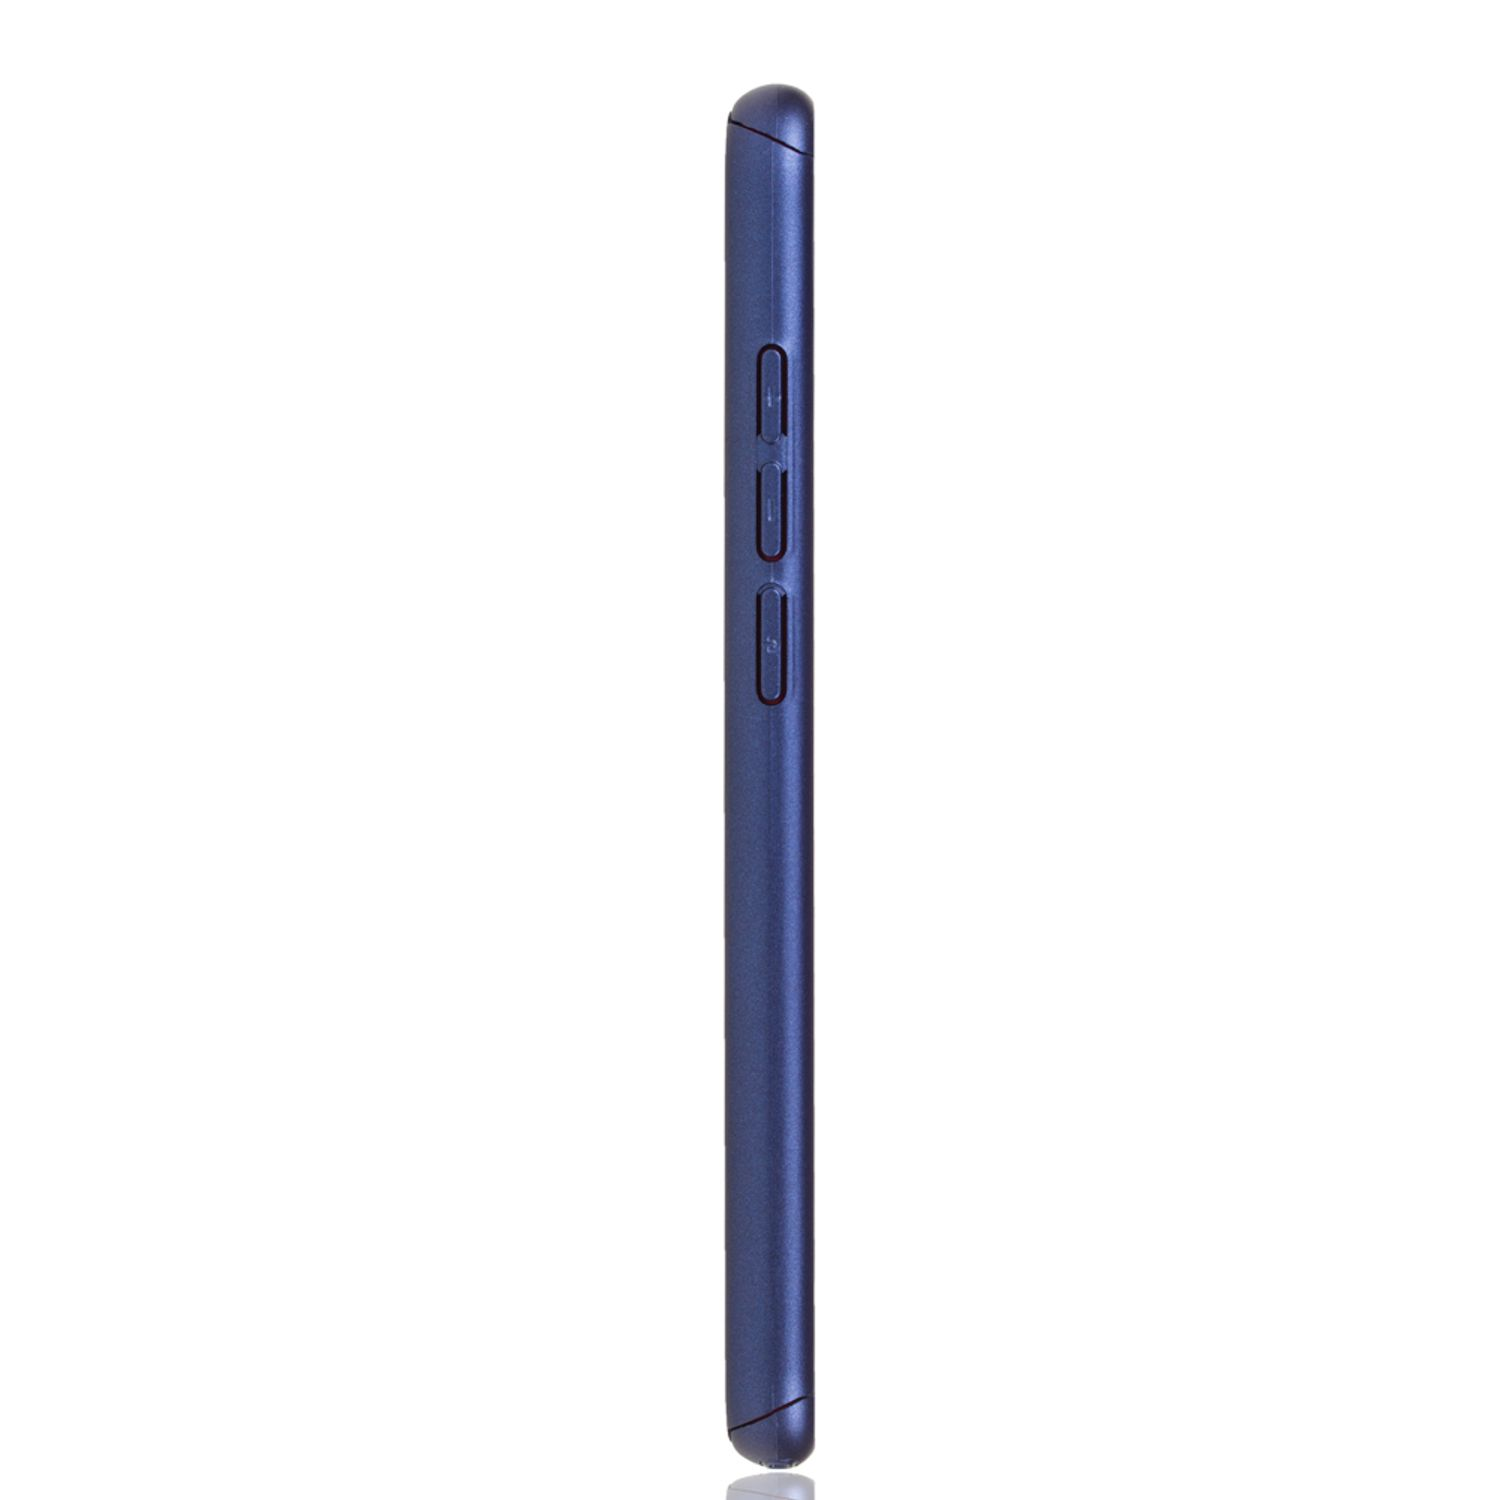 KÖNIG DESIGN Schutzhülle, Full Cover, Pro, Redmi Note / Xiaomi, 7 Note 7 Blau Redmi